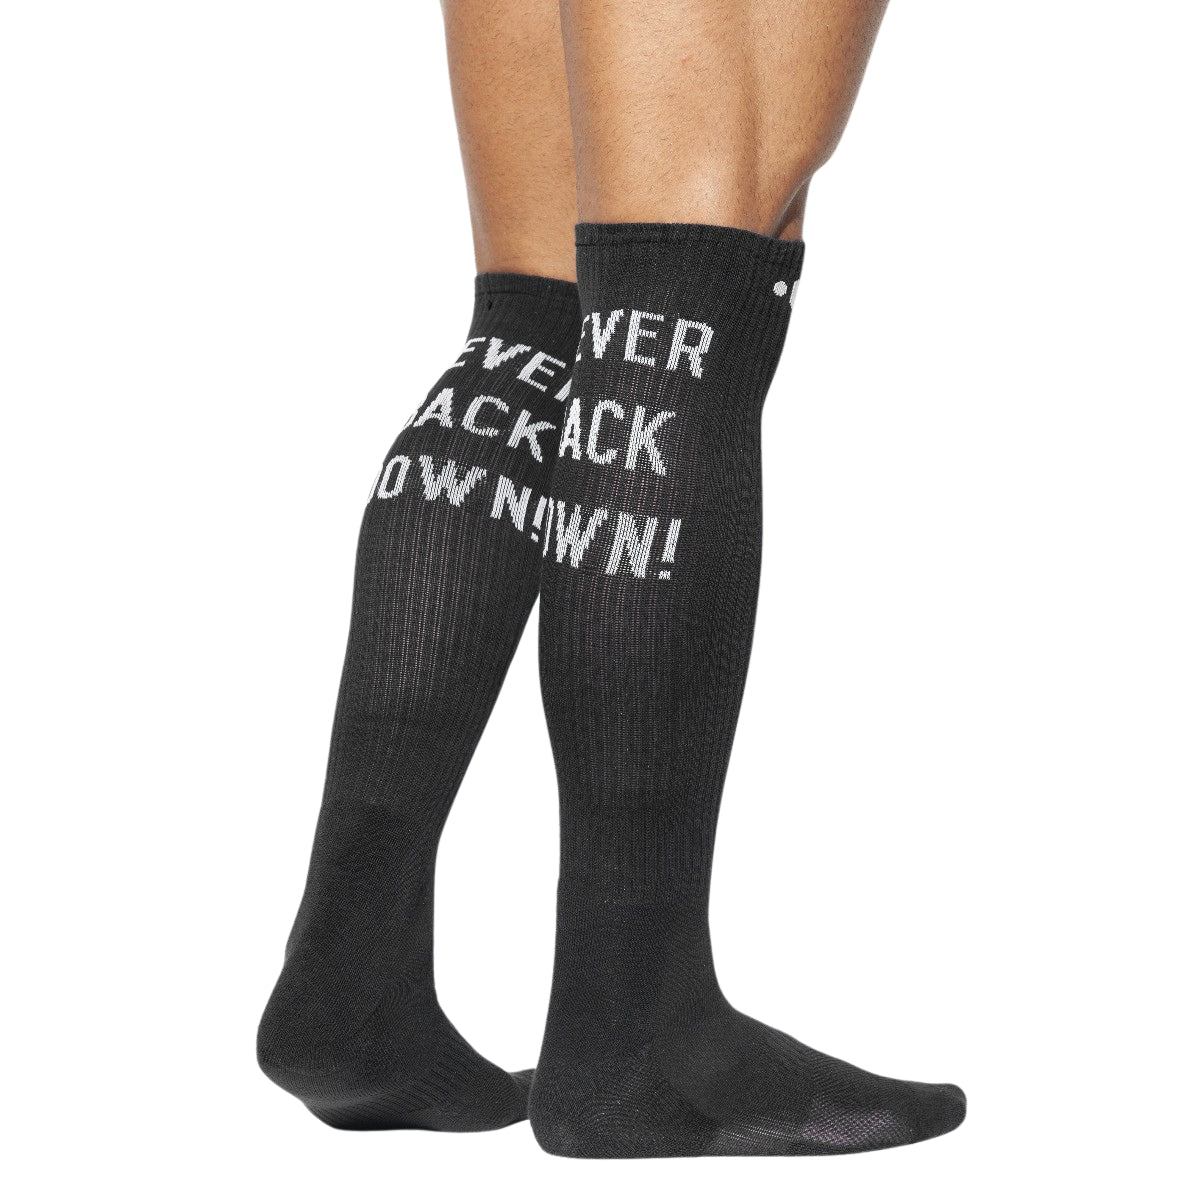 ES Collection Never Back Down Socks Black SCK09